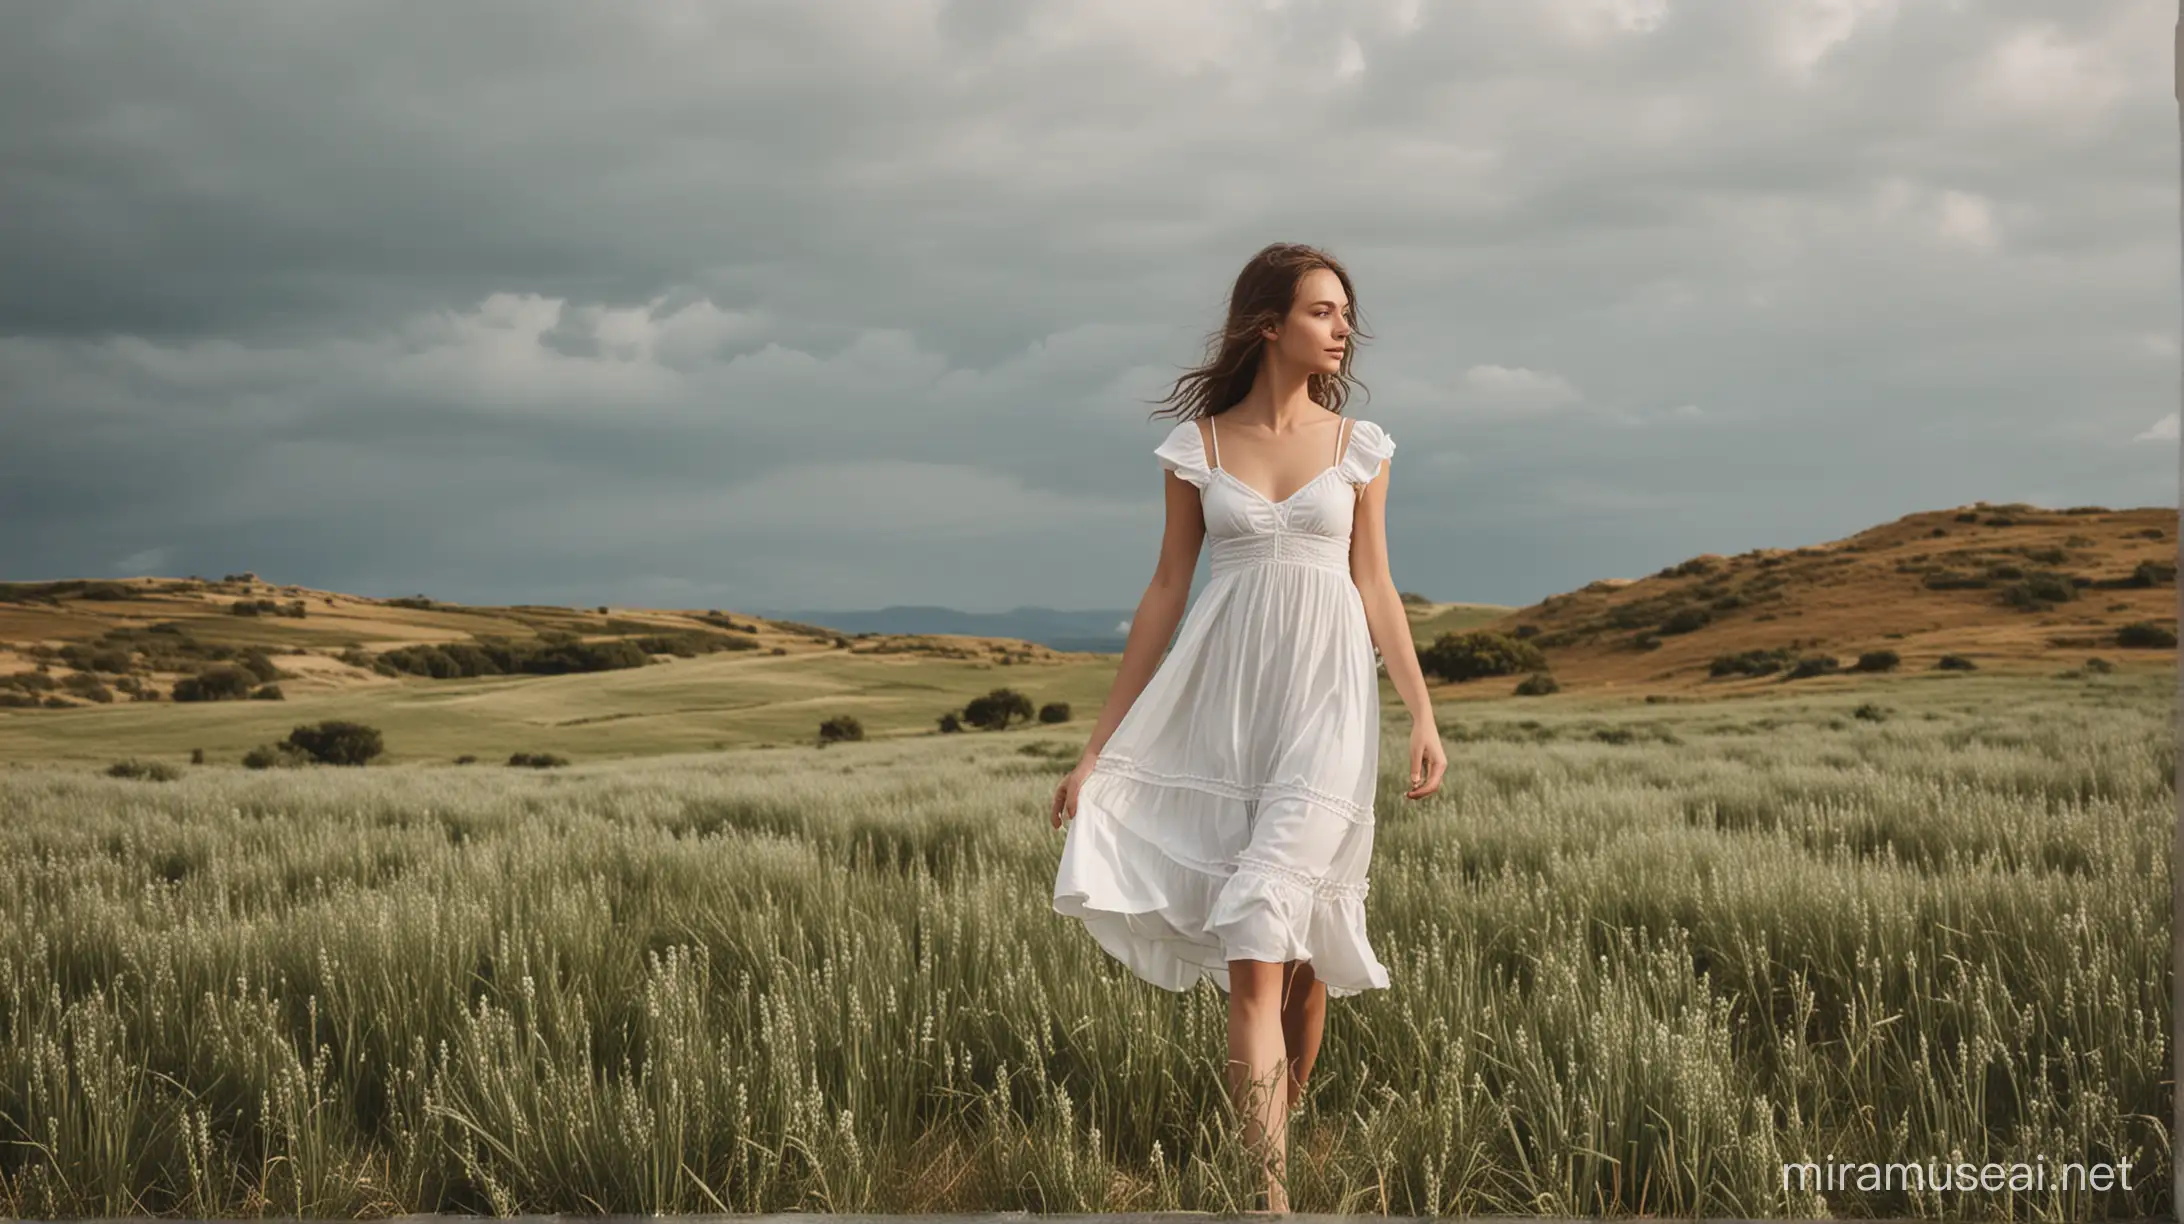 Serene Girl in White Dress amidst Scenic Landscape